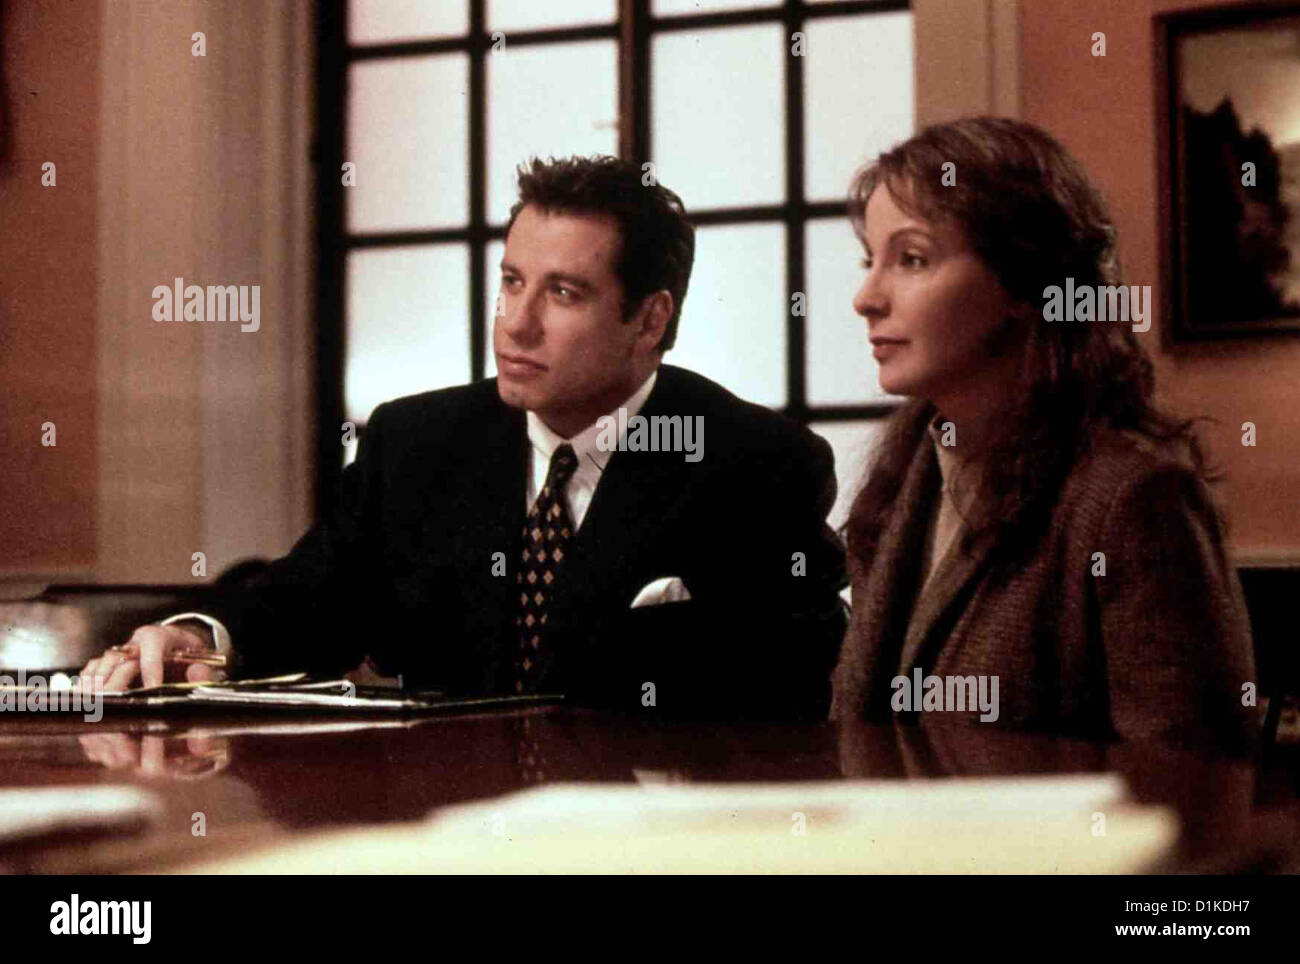 Zivilprozess  Civil Action,  Jan Schlichtmann (John Travolta), Anne Anderson (Kathleen Quinlan) *** Local Caption *** 1998 Stock Photo